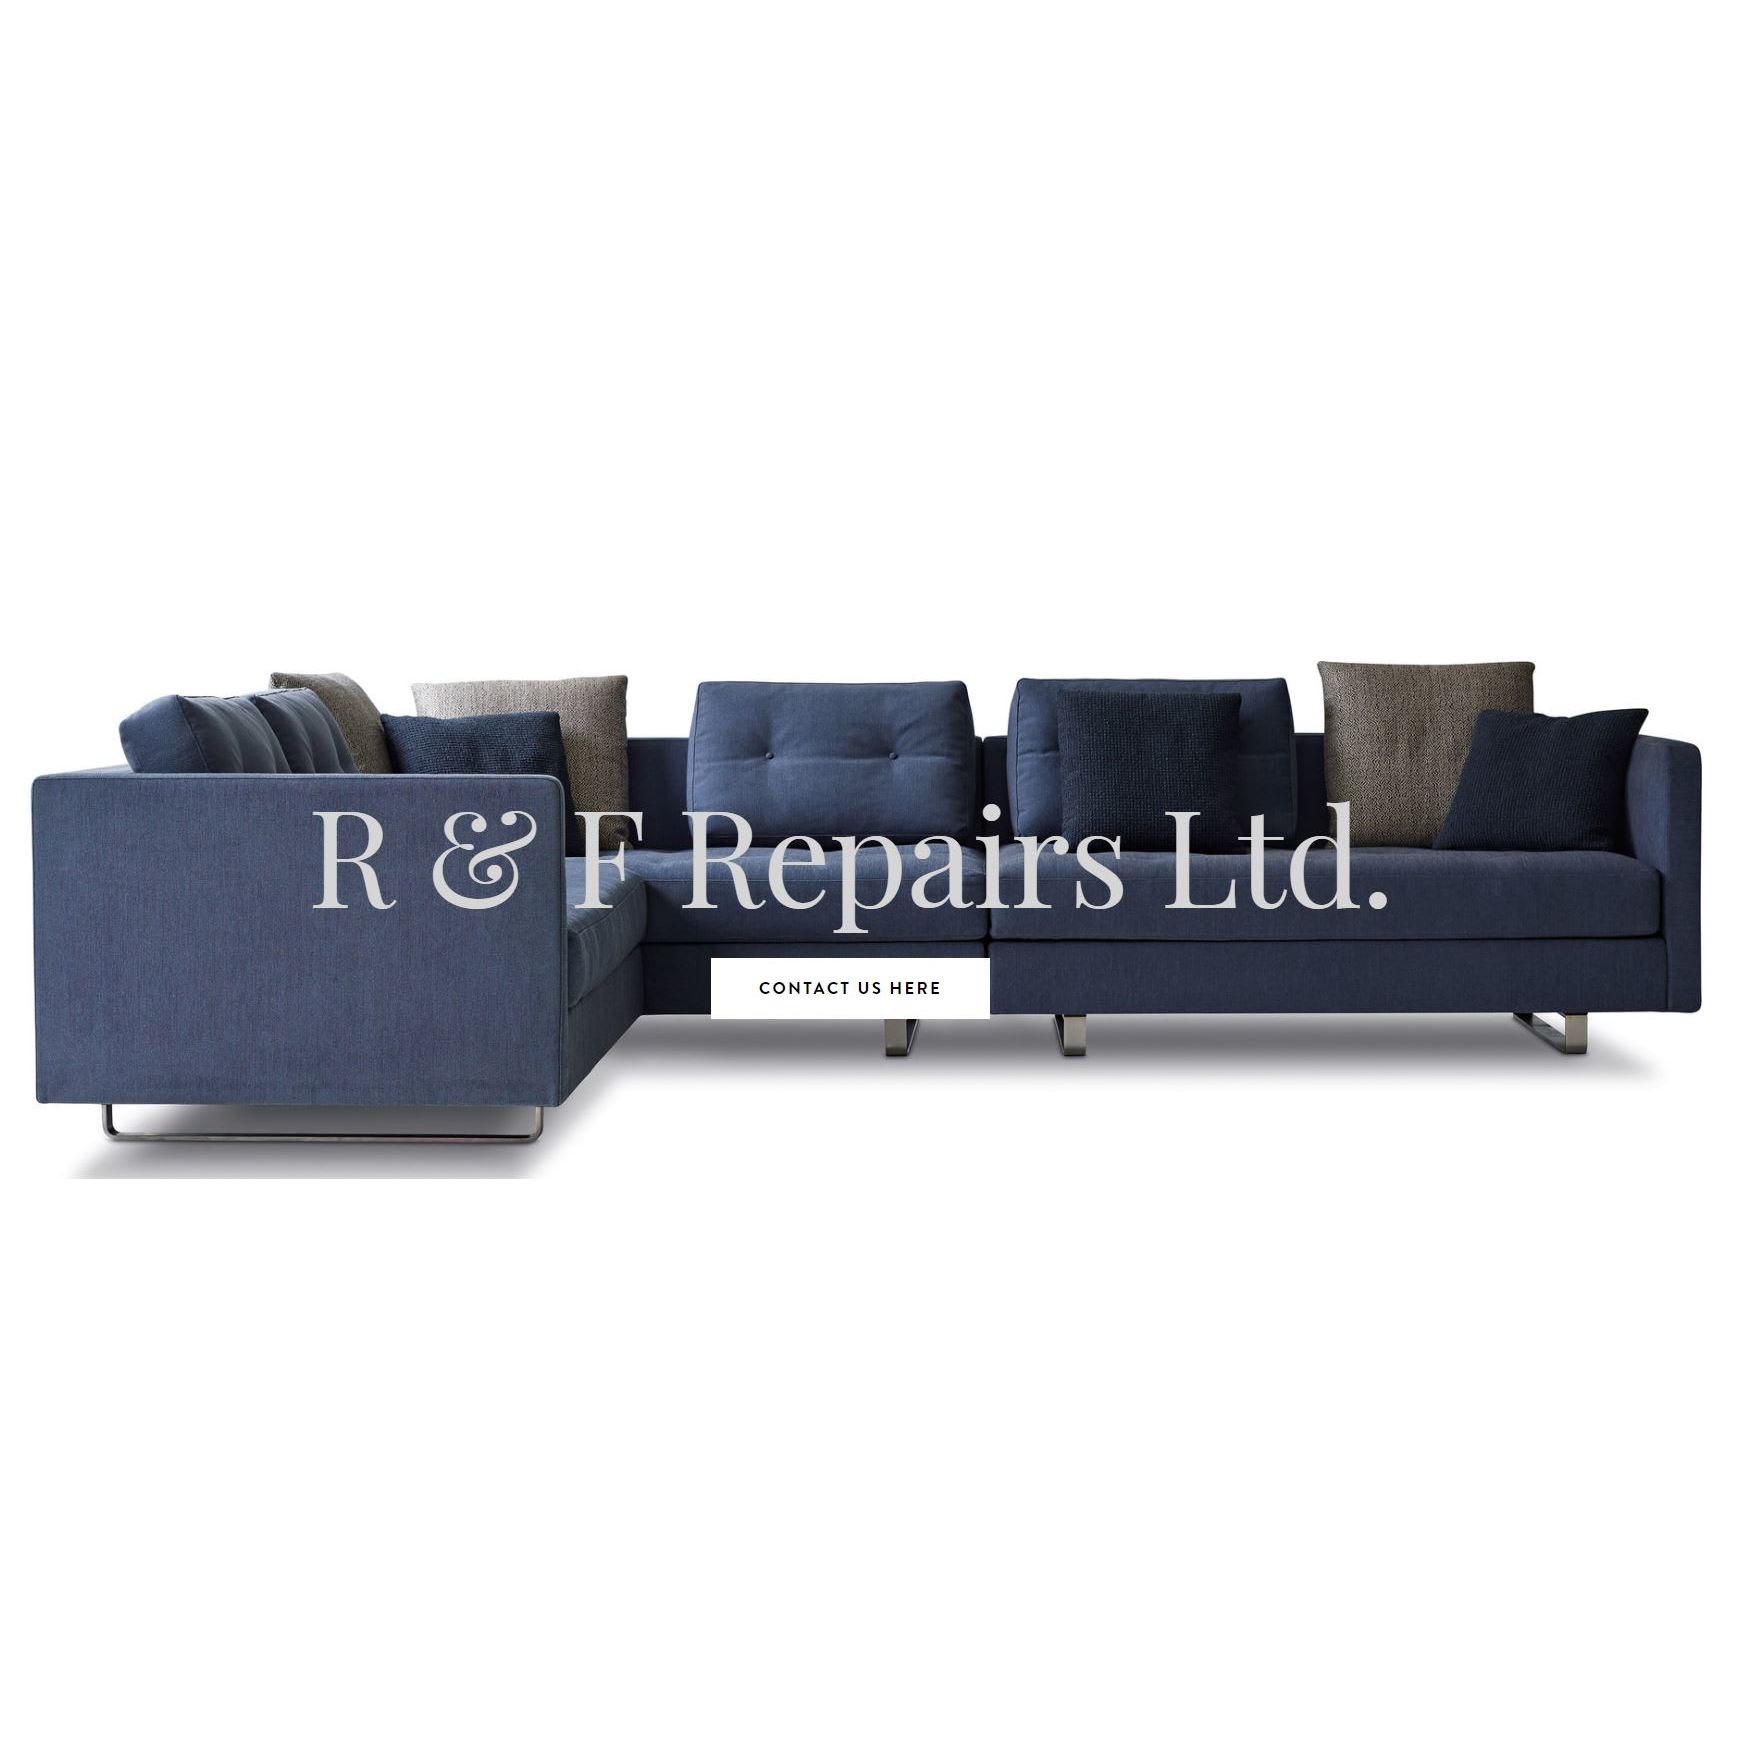 Furniture Repairs Blog - CALL : 01902 686575